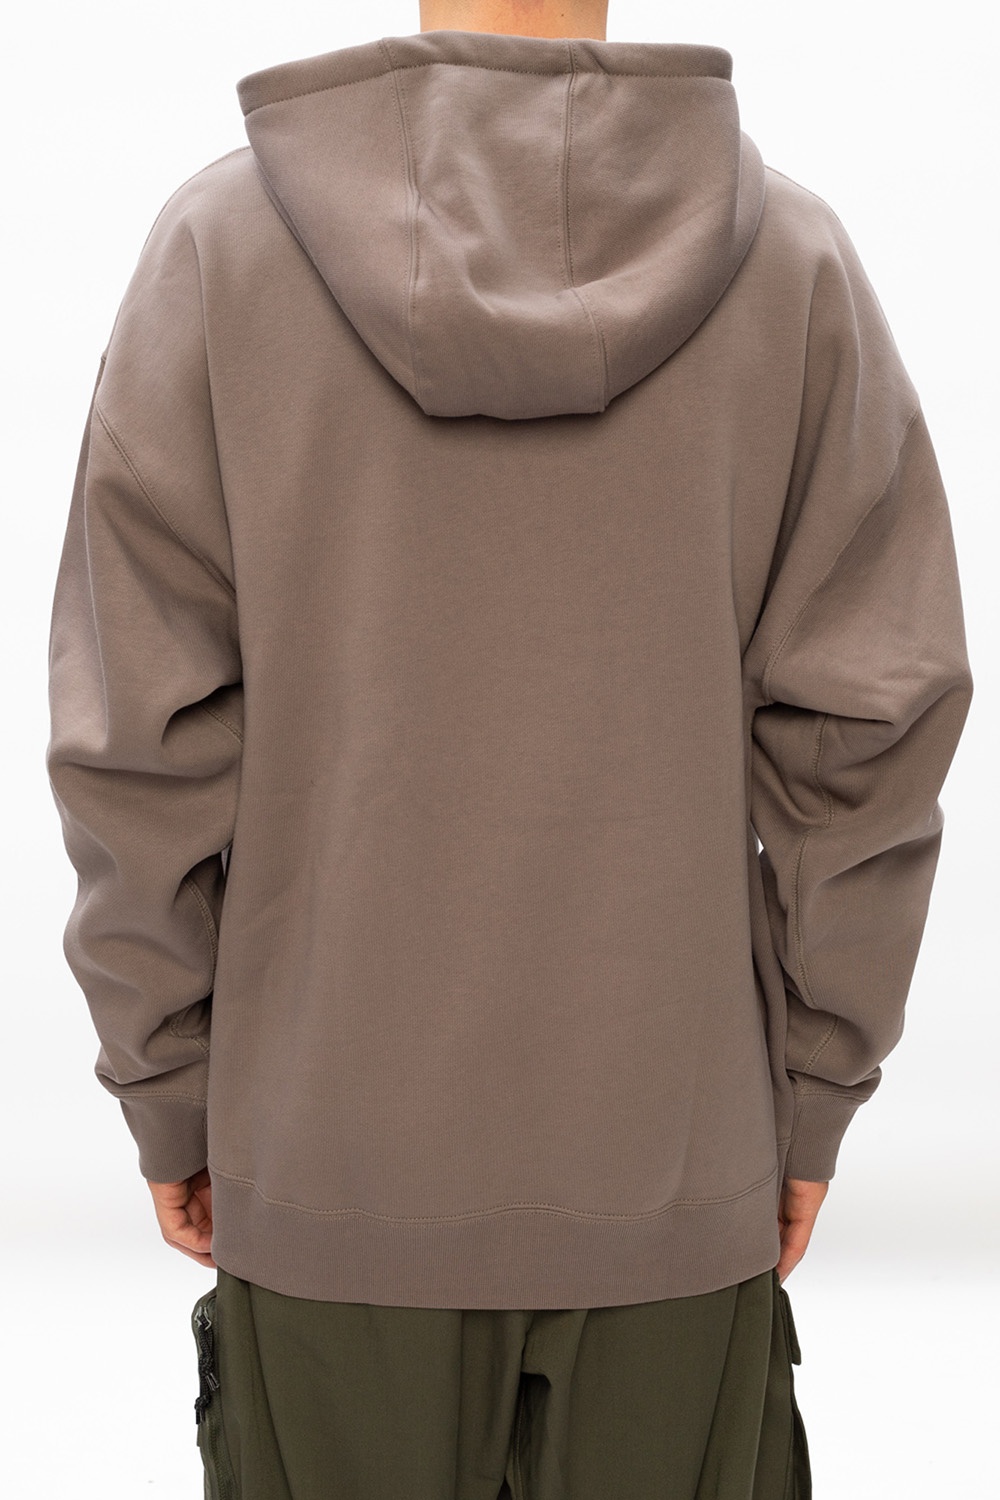 nikelab olive grey hoodie